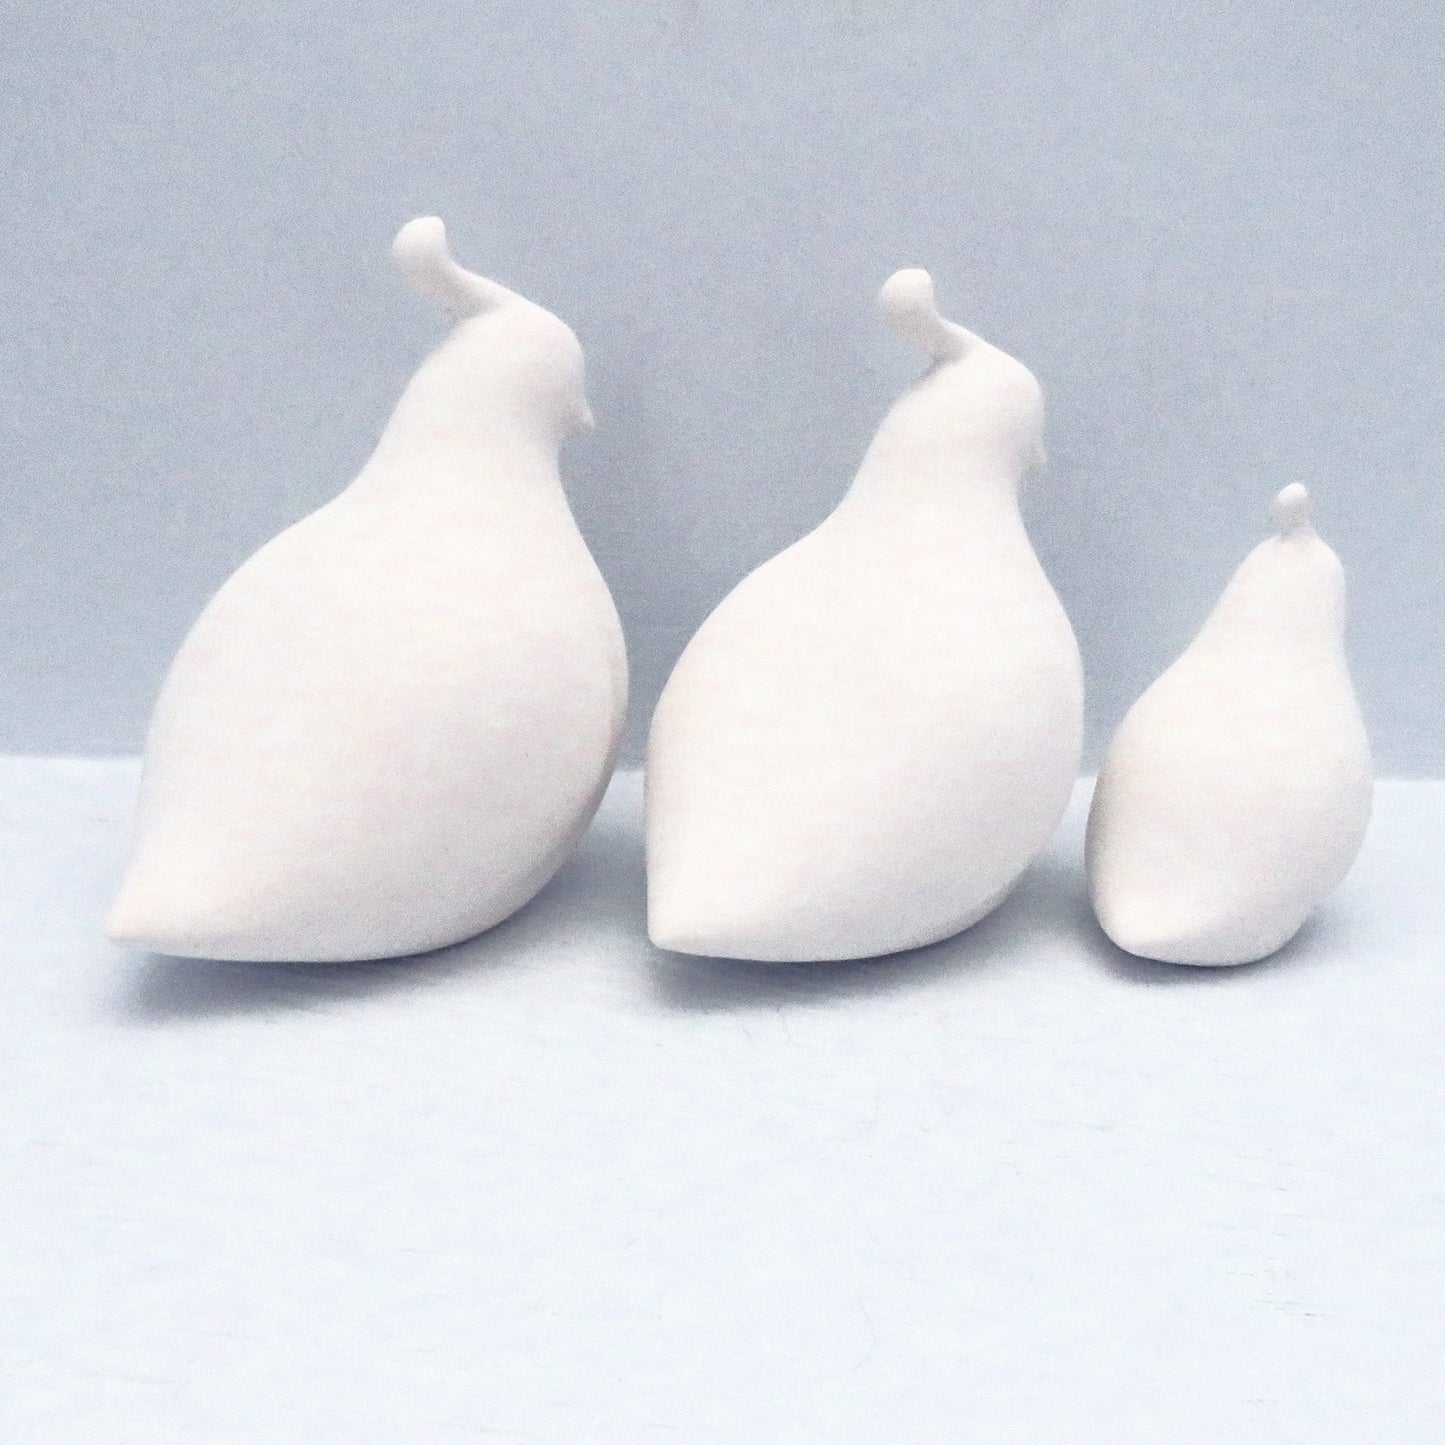 Unpainted Ceramic Bisque Quail Figurines, Ready to Paint Quail Statues, Ceramics to Paint, Paintable Ceramics, Bird Statues